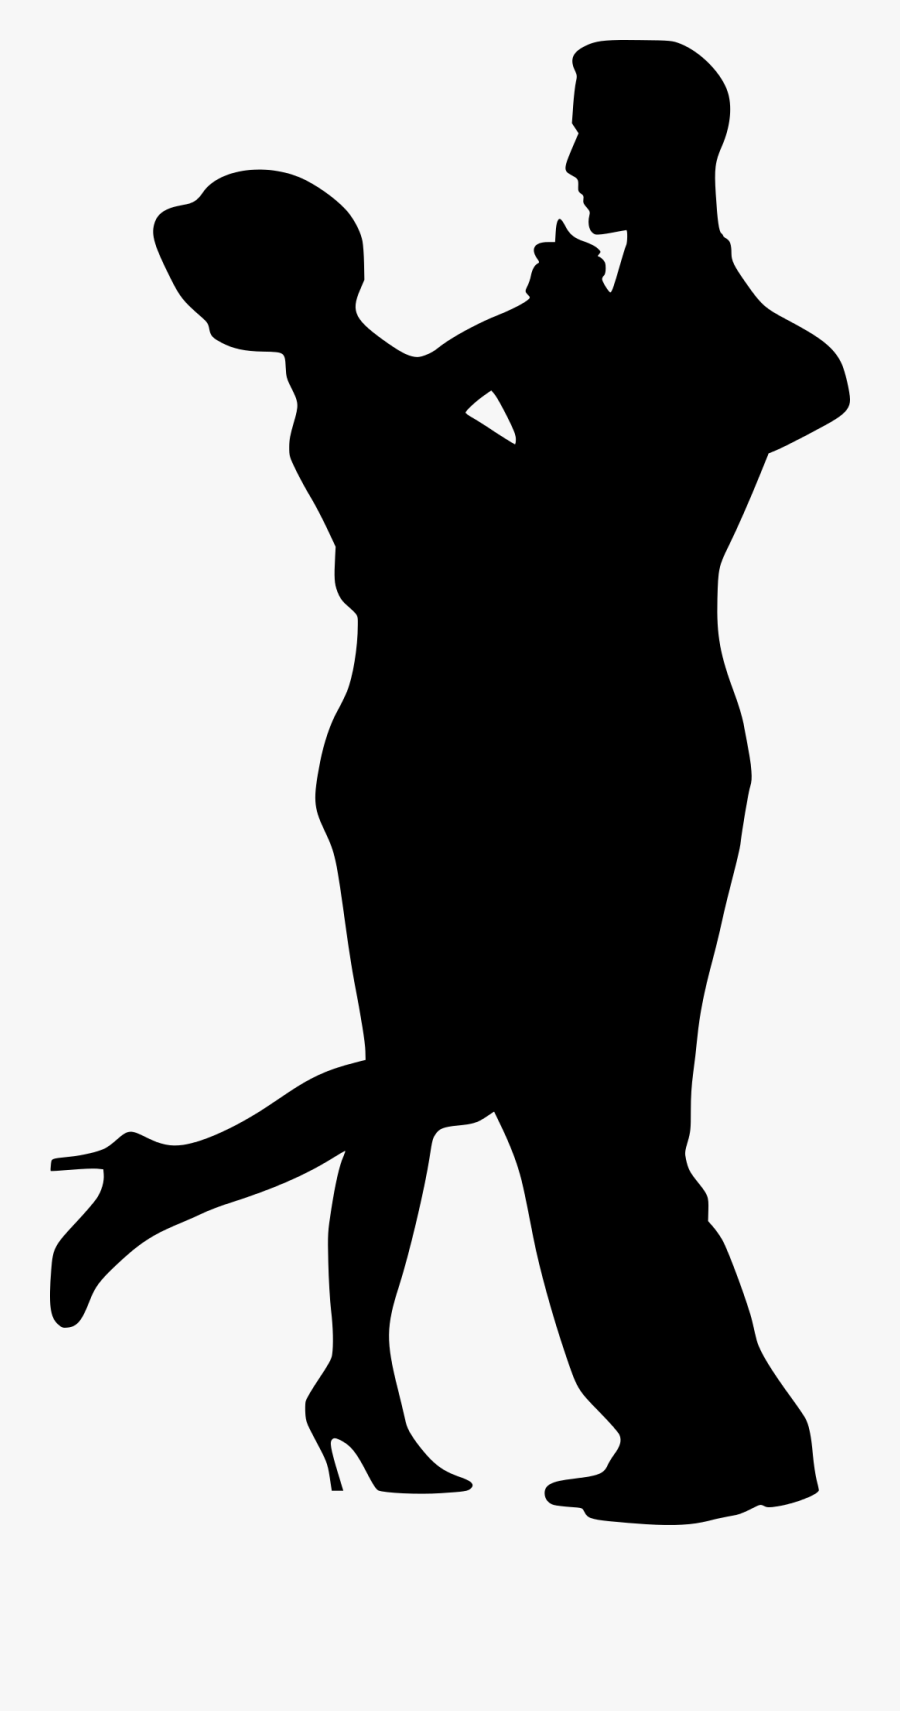 Partner Dance Clip Art - Dancing Couple Silhouette Png, Transparent Clipart